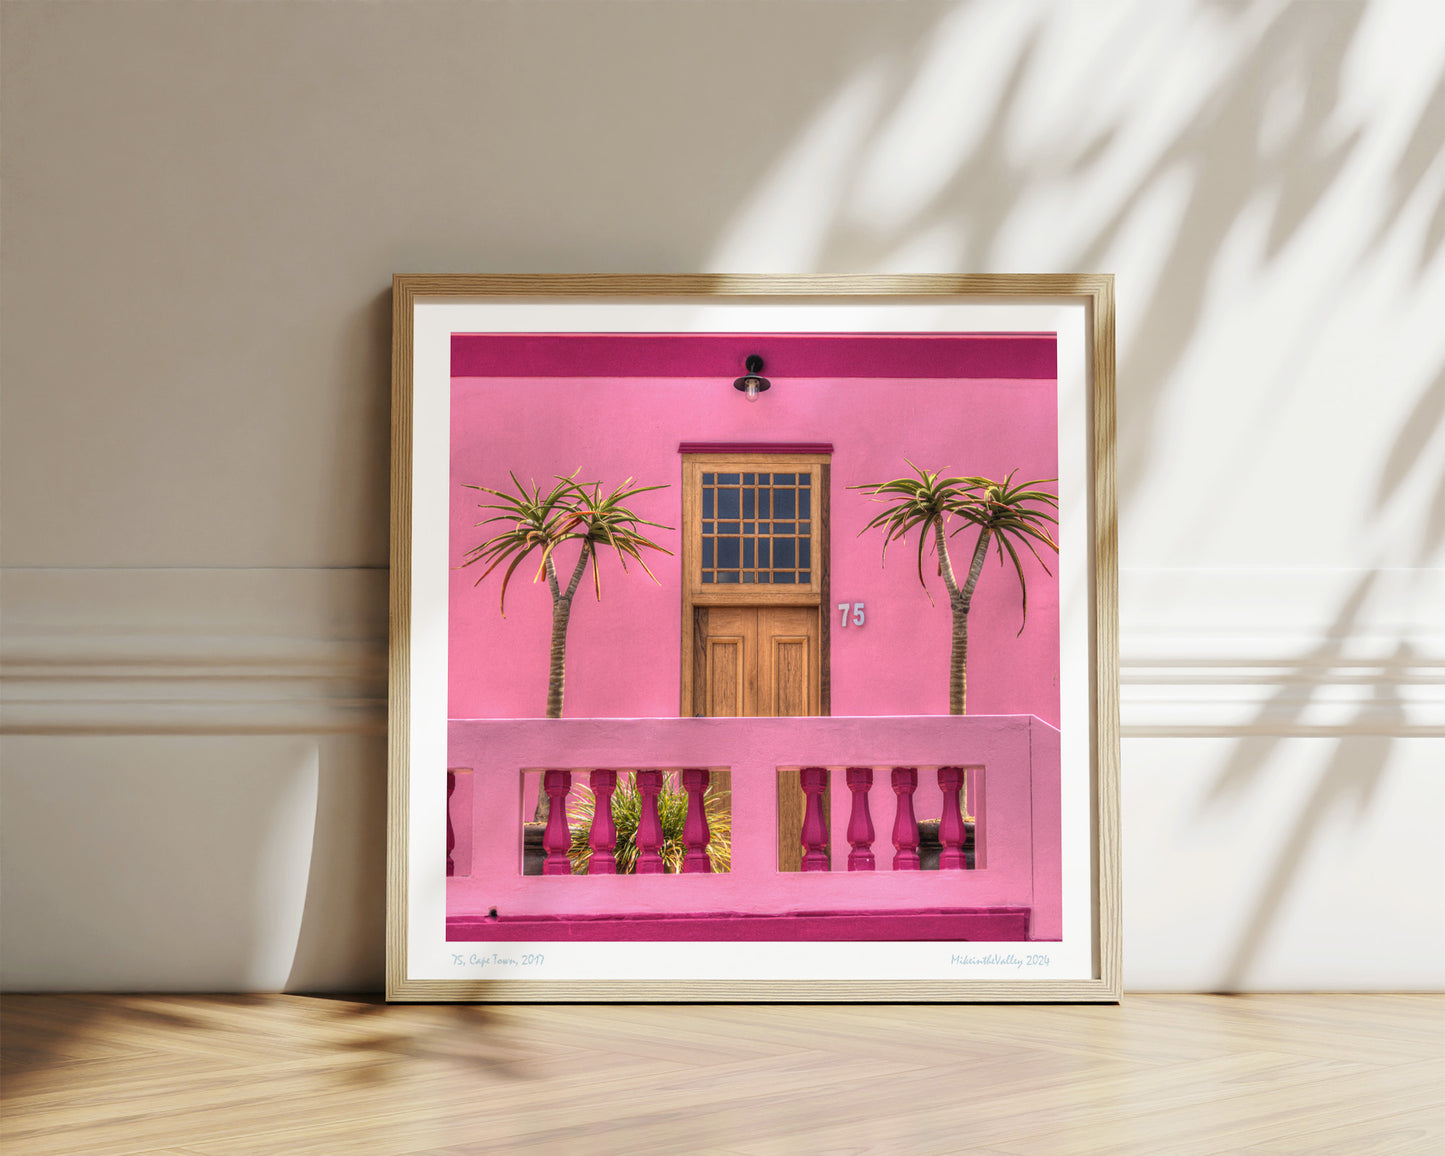 schöne Haustür aus Holz in einer pinkfarbenen Hauswand. Rechts und links davon jeweils eine Palme. Eichen-Massivholzrahmen.